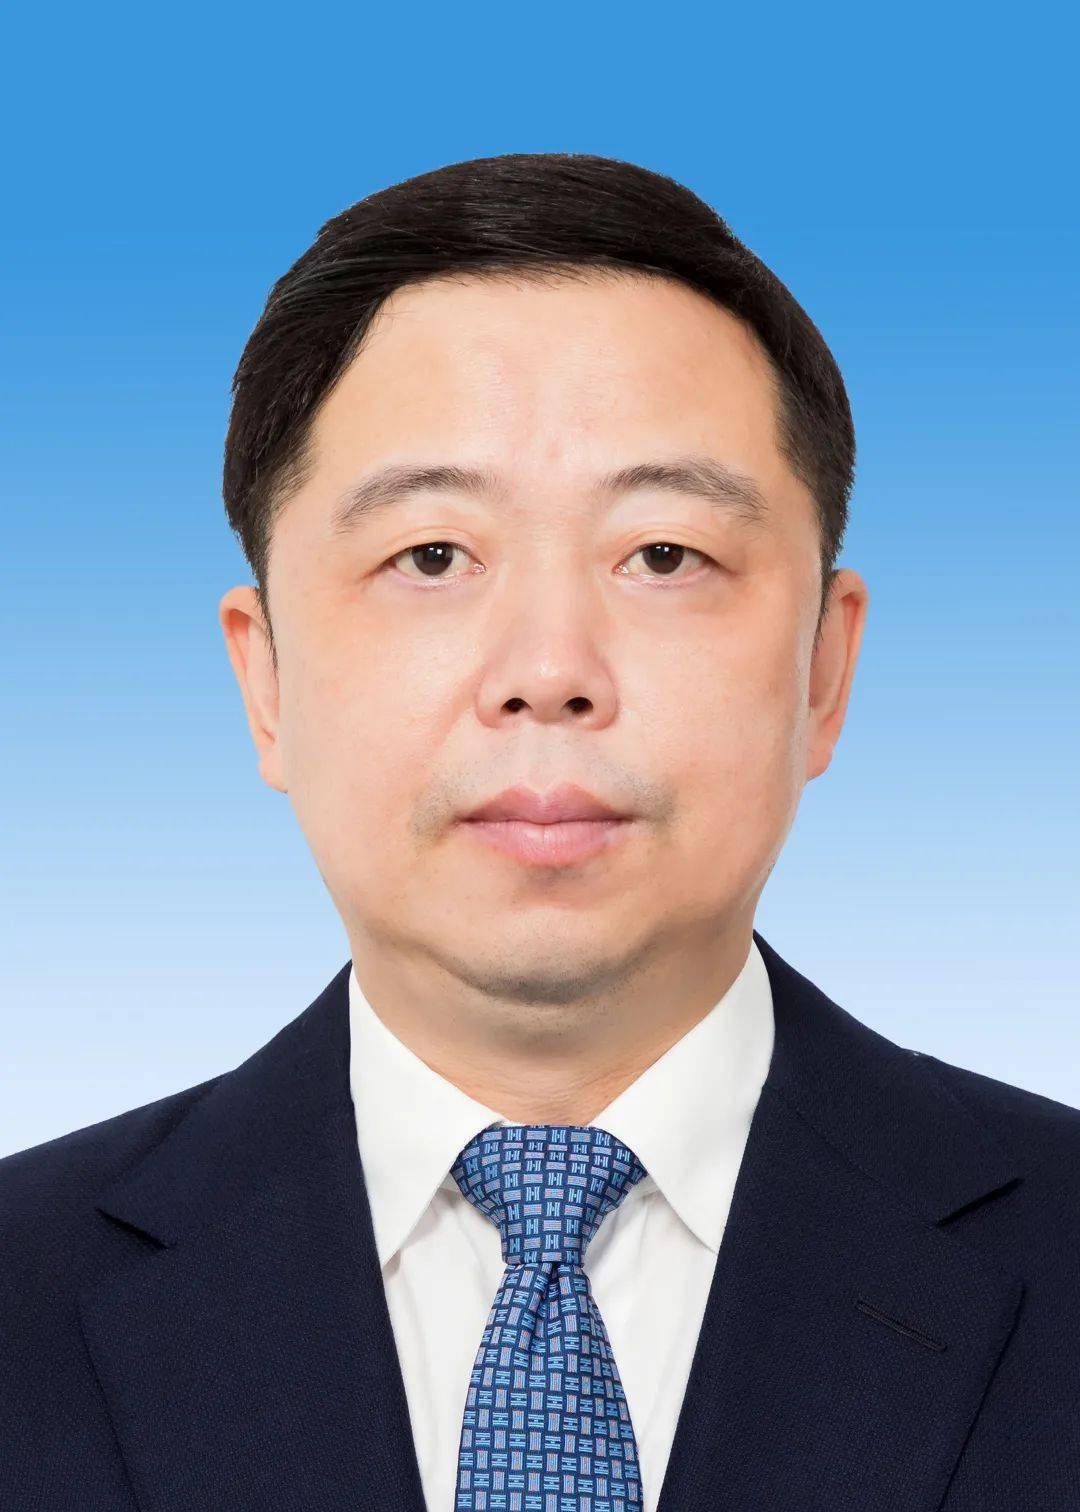 市纪委选出新一届领导班子成员 马明龙同志当选镇江市委书记